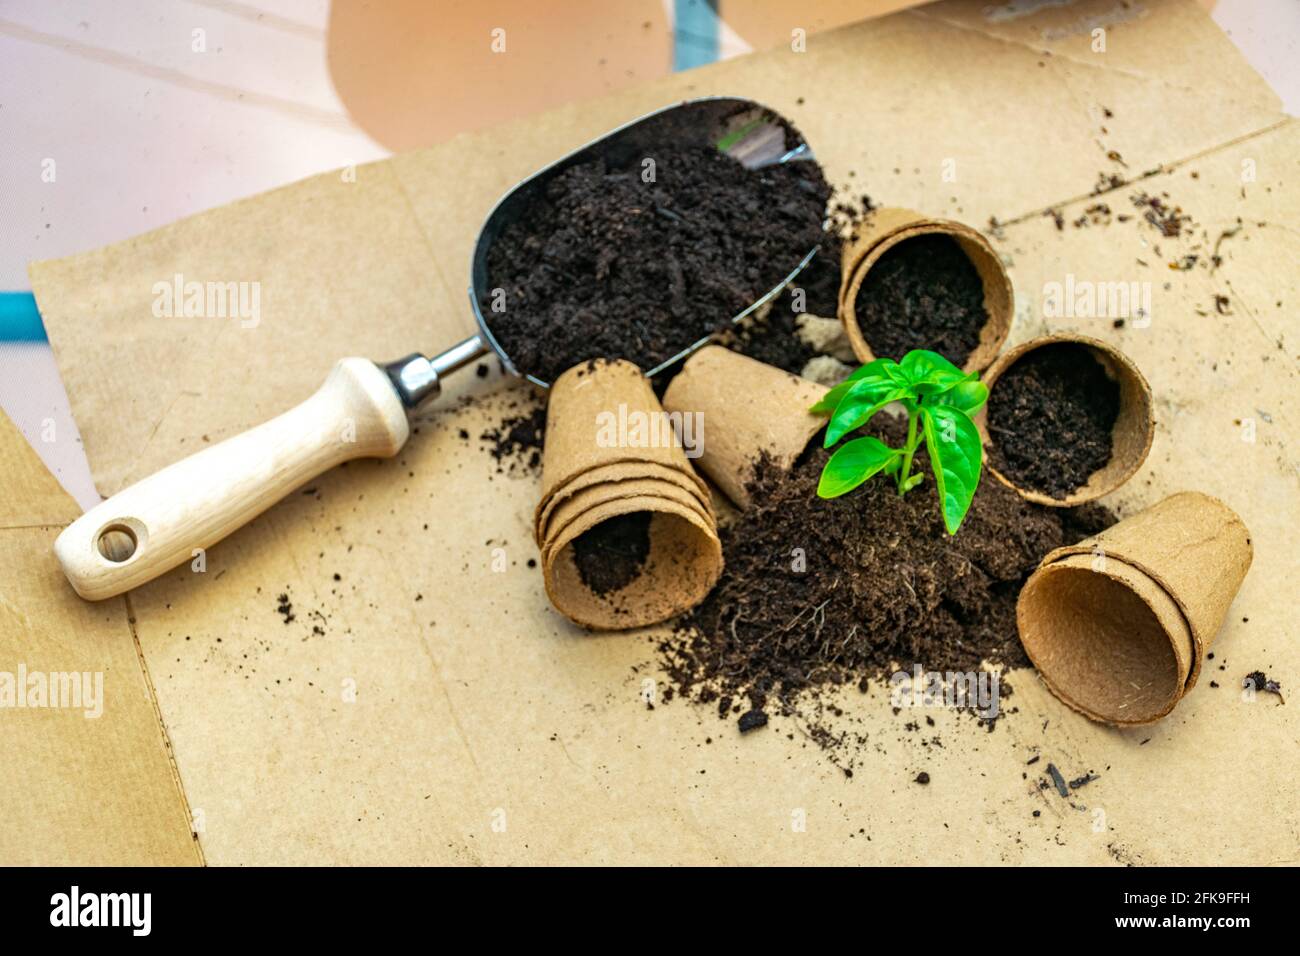 Petite plante de basilic en pot biologique et un jardinage pelle sur une surface en carton Banque D'Images